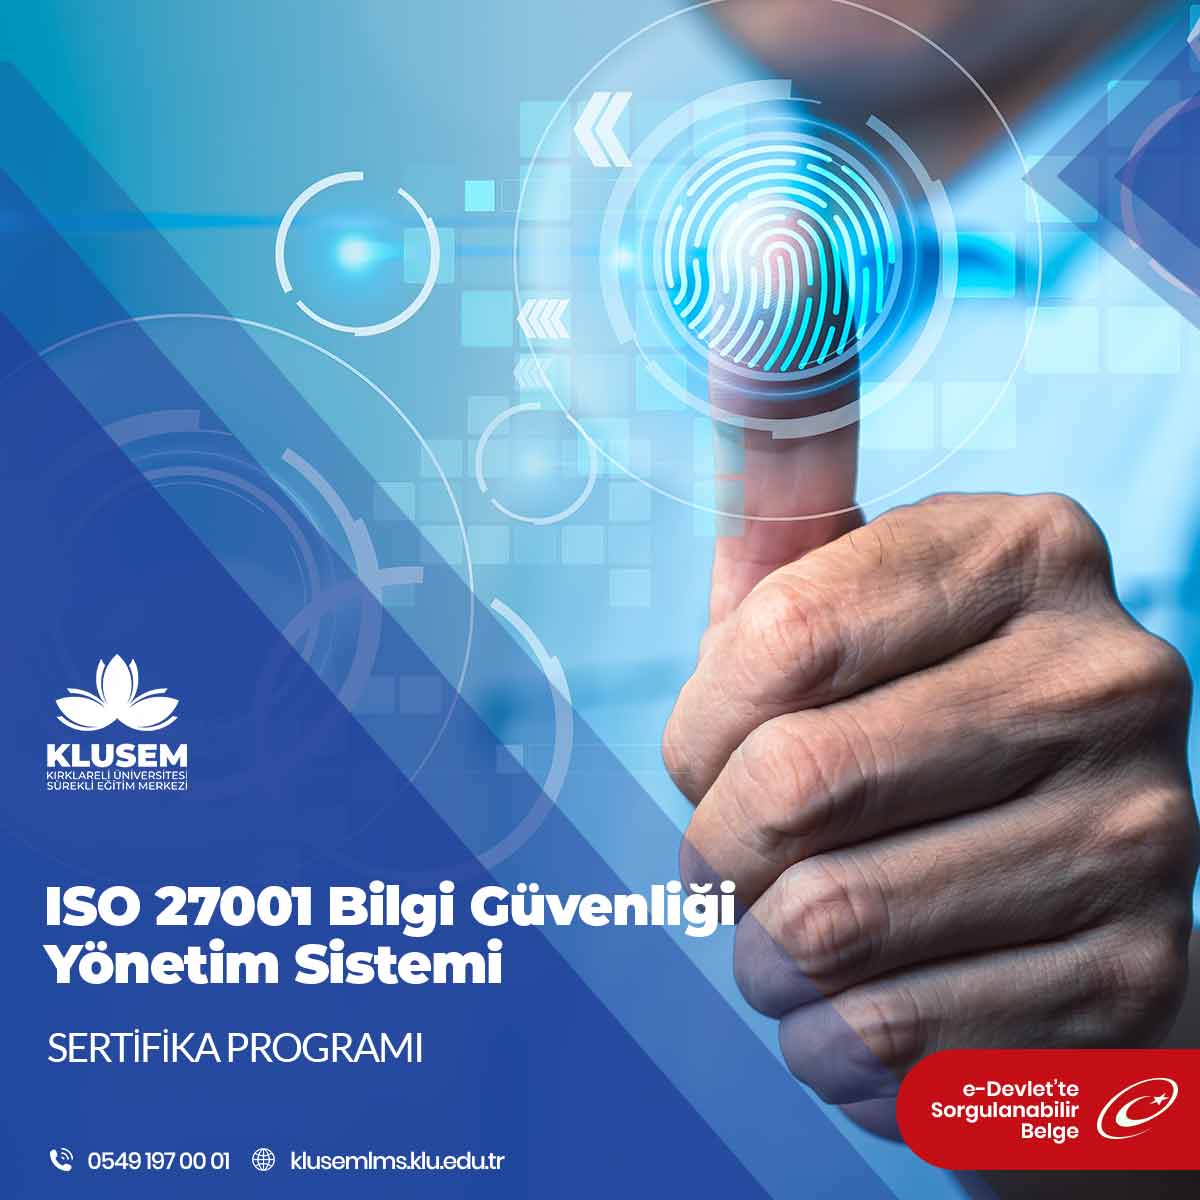 ISO 27001 Bilgi Güvenliği Yönetim Sistemi Sertifika Programı